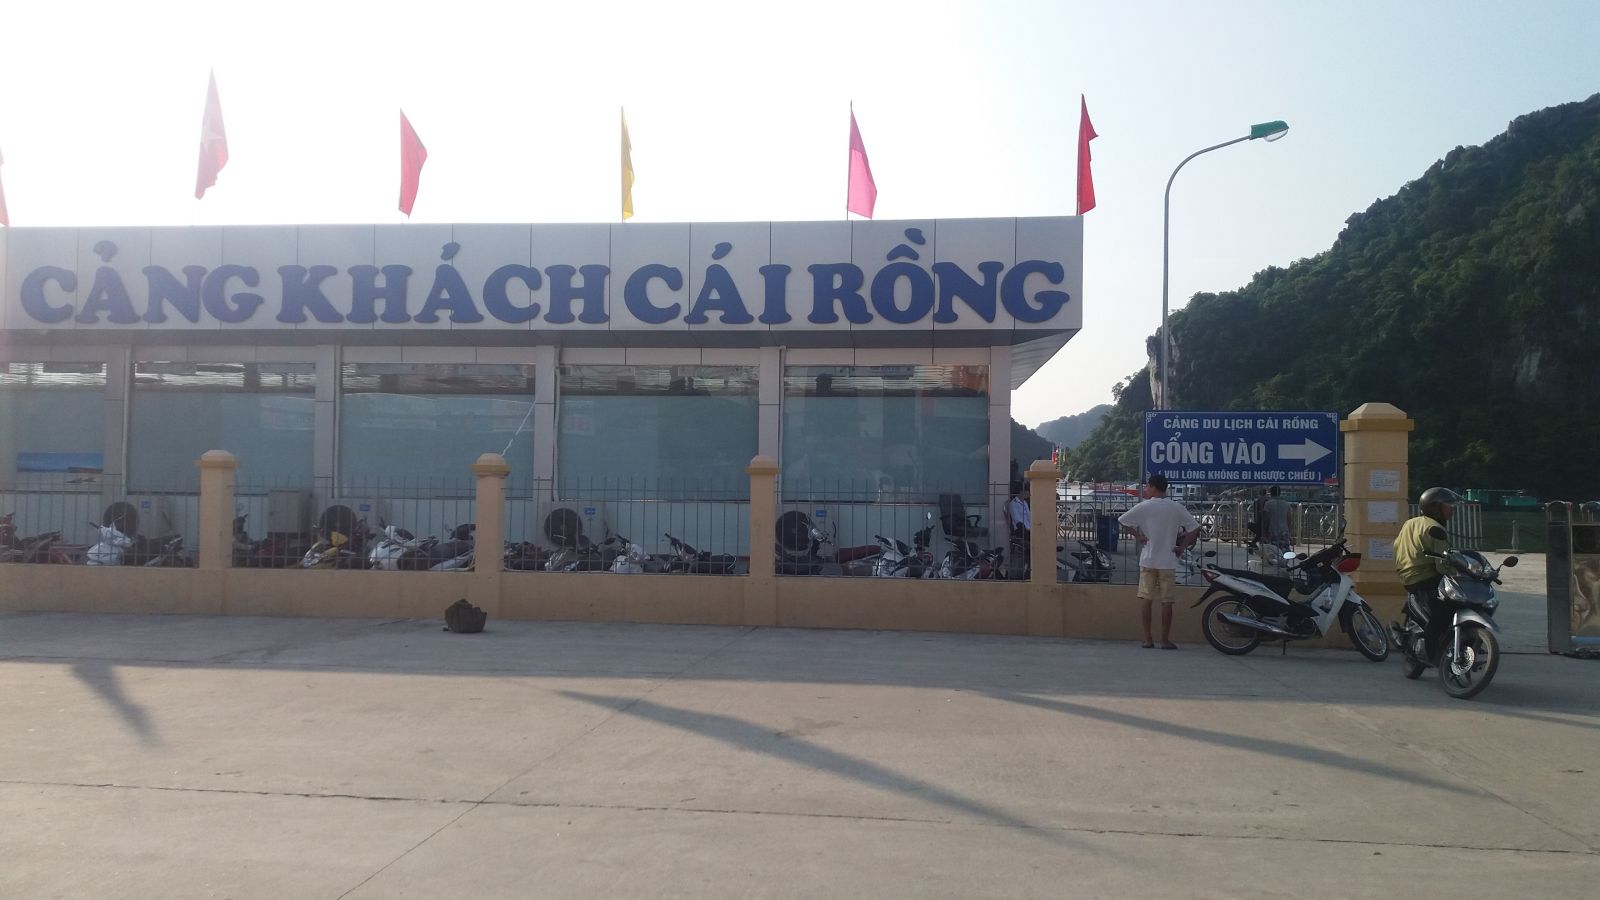 Cai Rong port